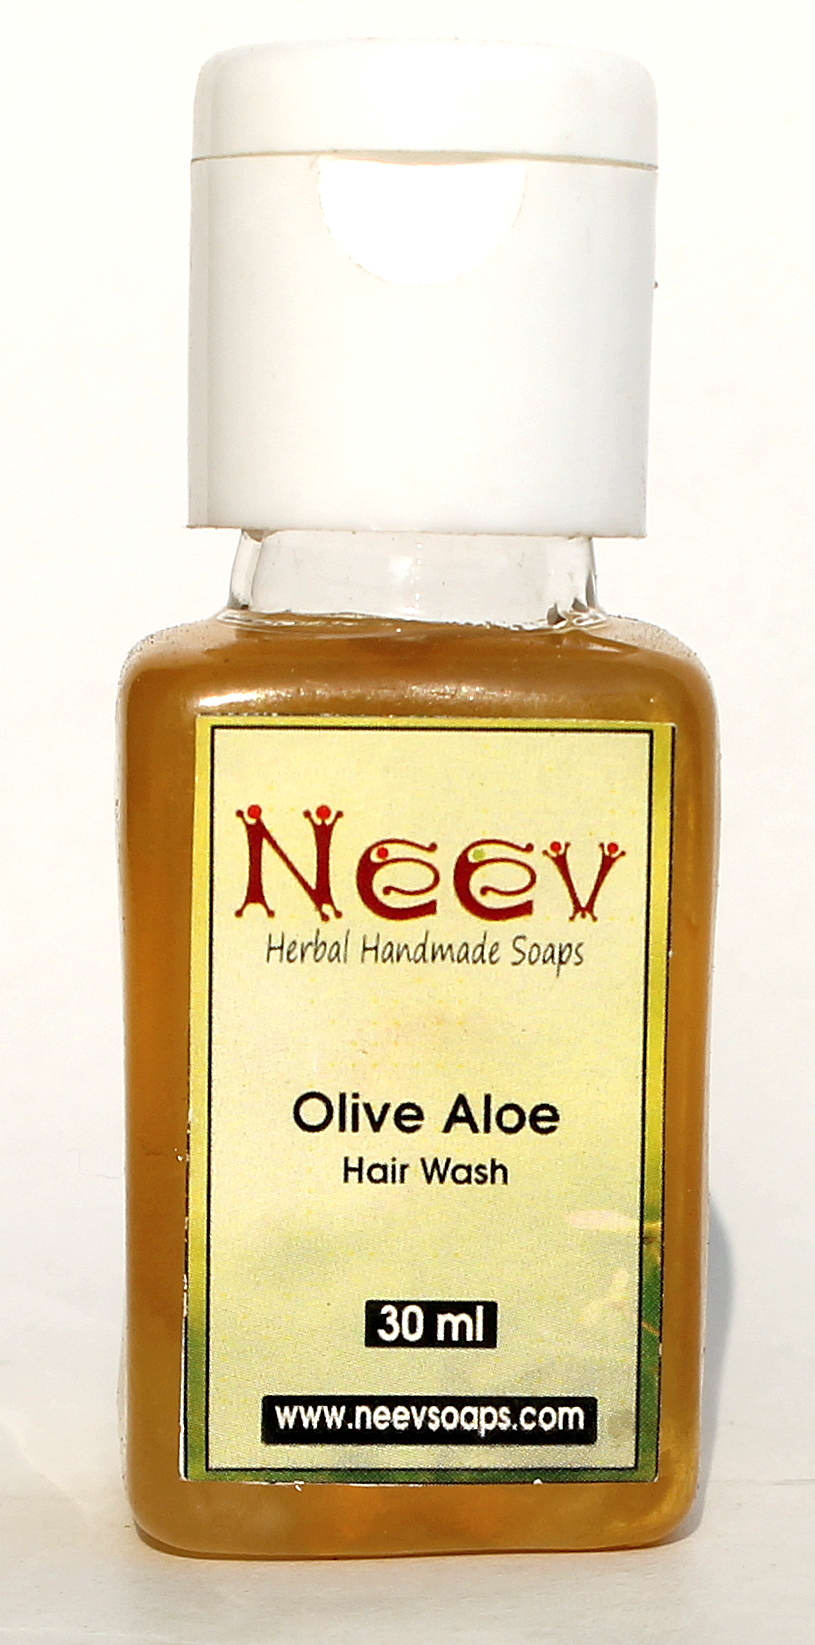 Olive Aloe Hair Wash Mini